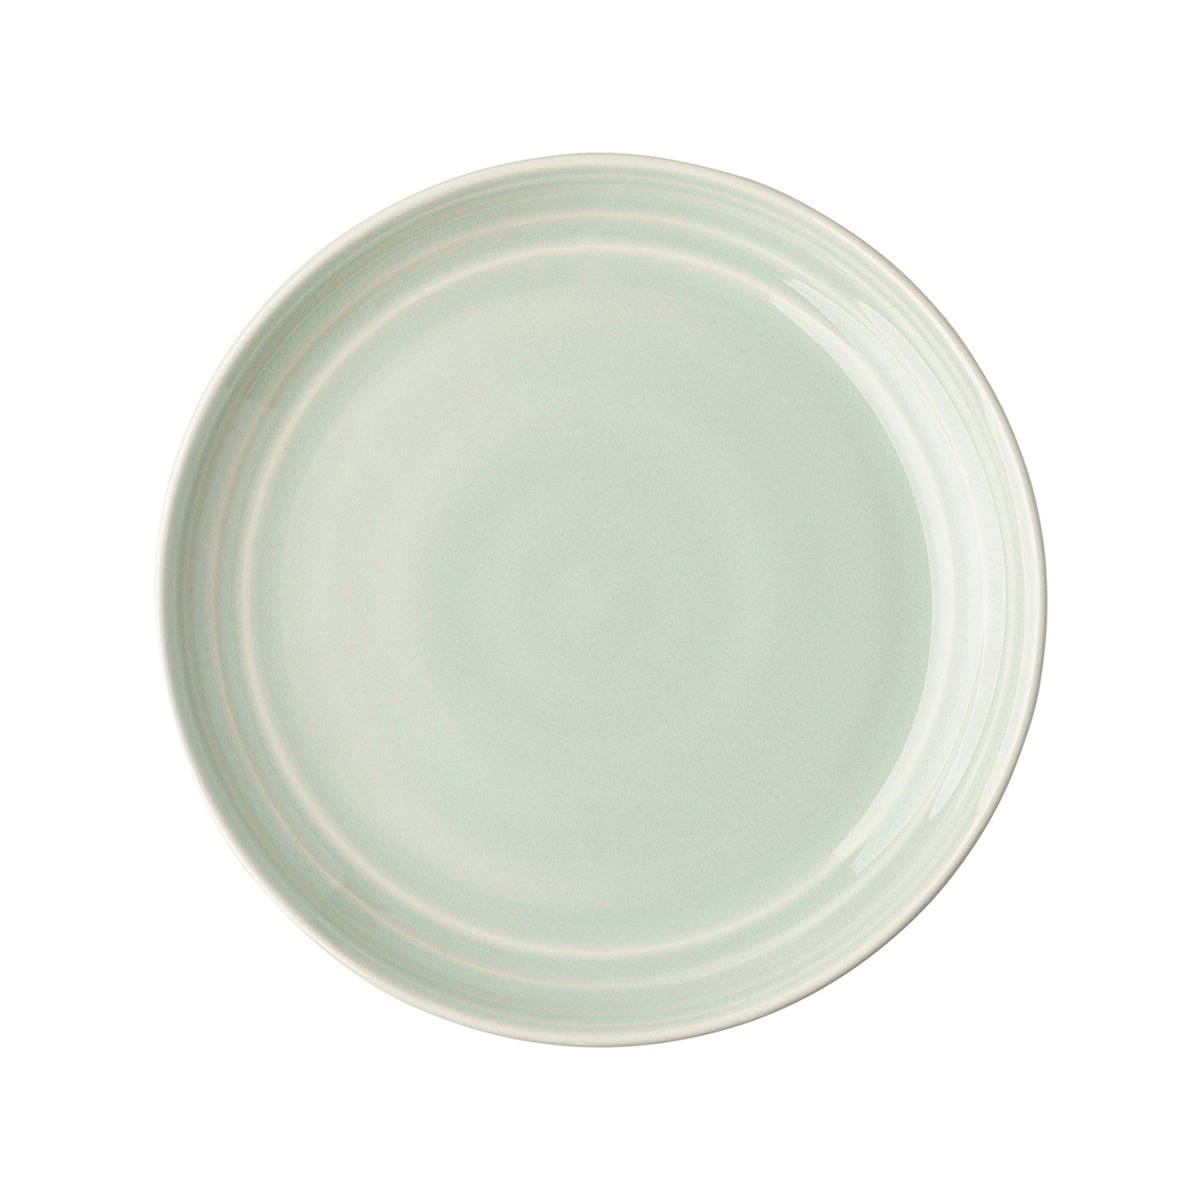 Bilbao Dessert-Salad Plate Set-4 - Sage-2nd